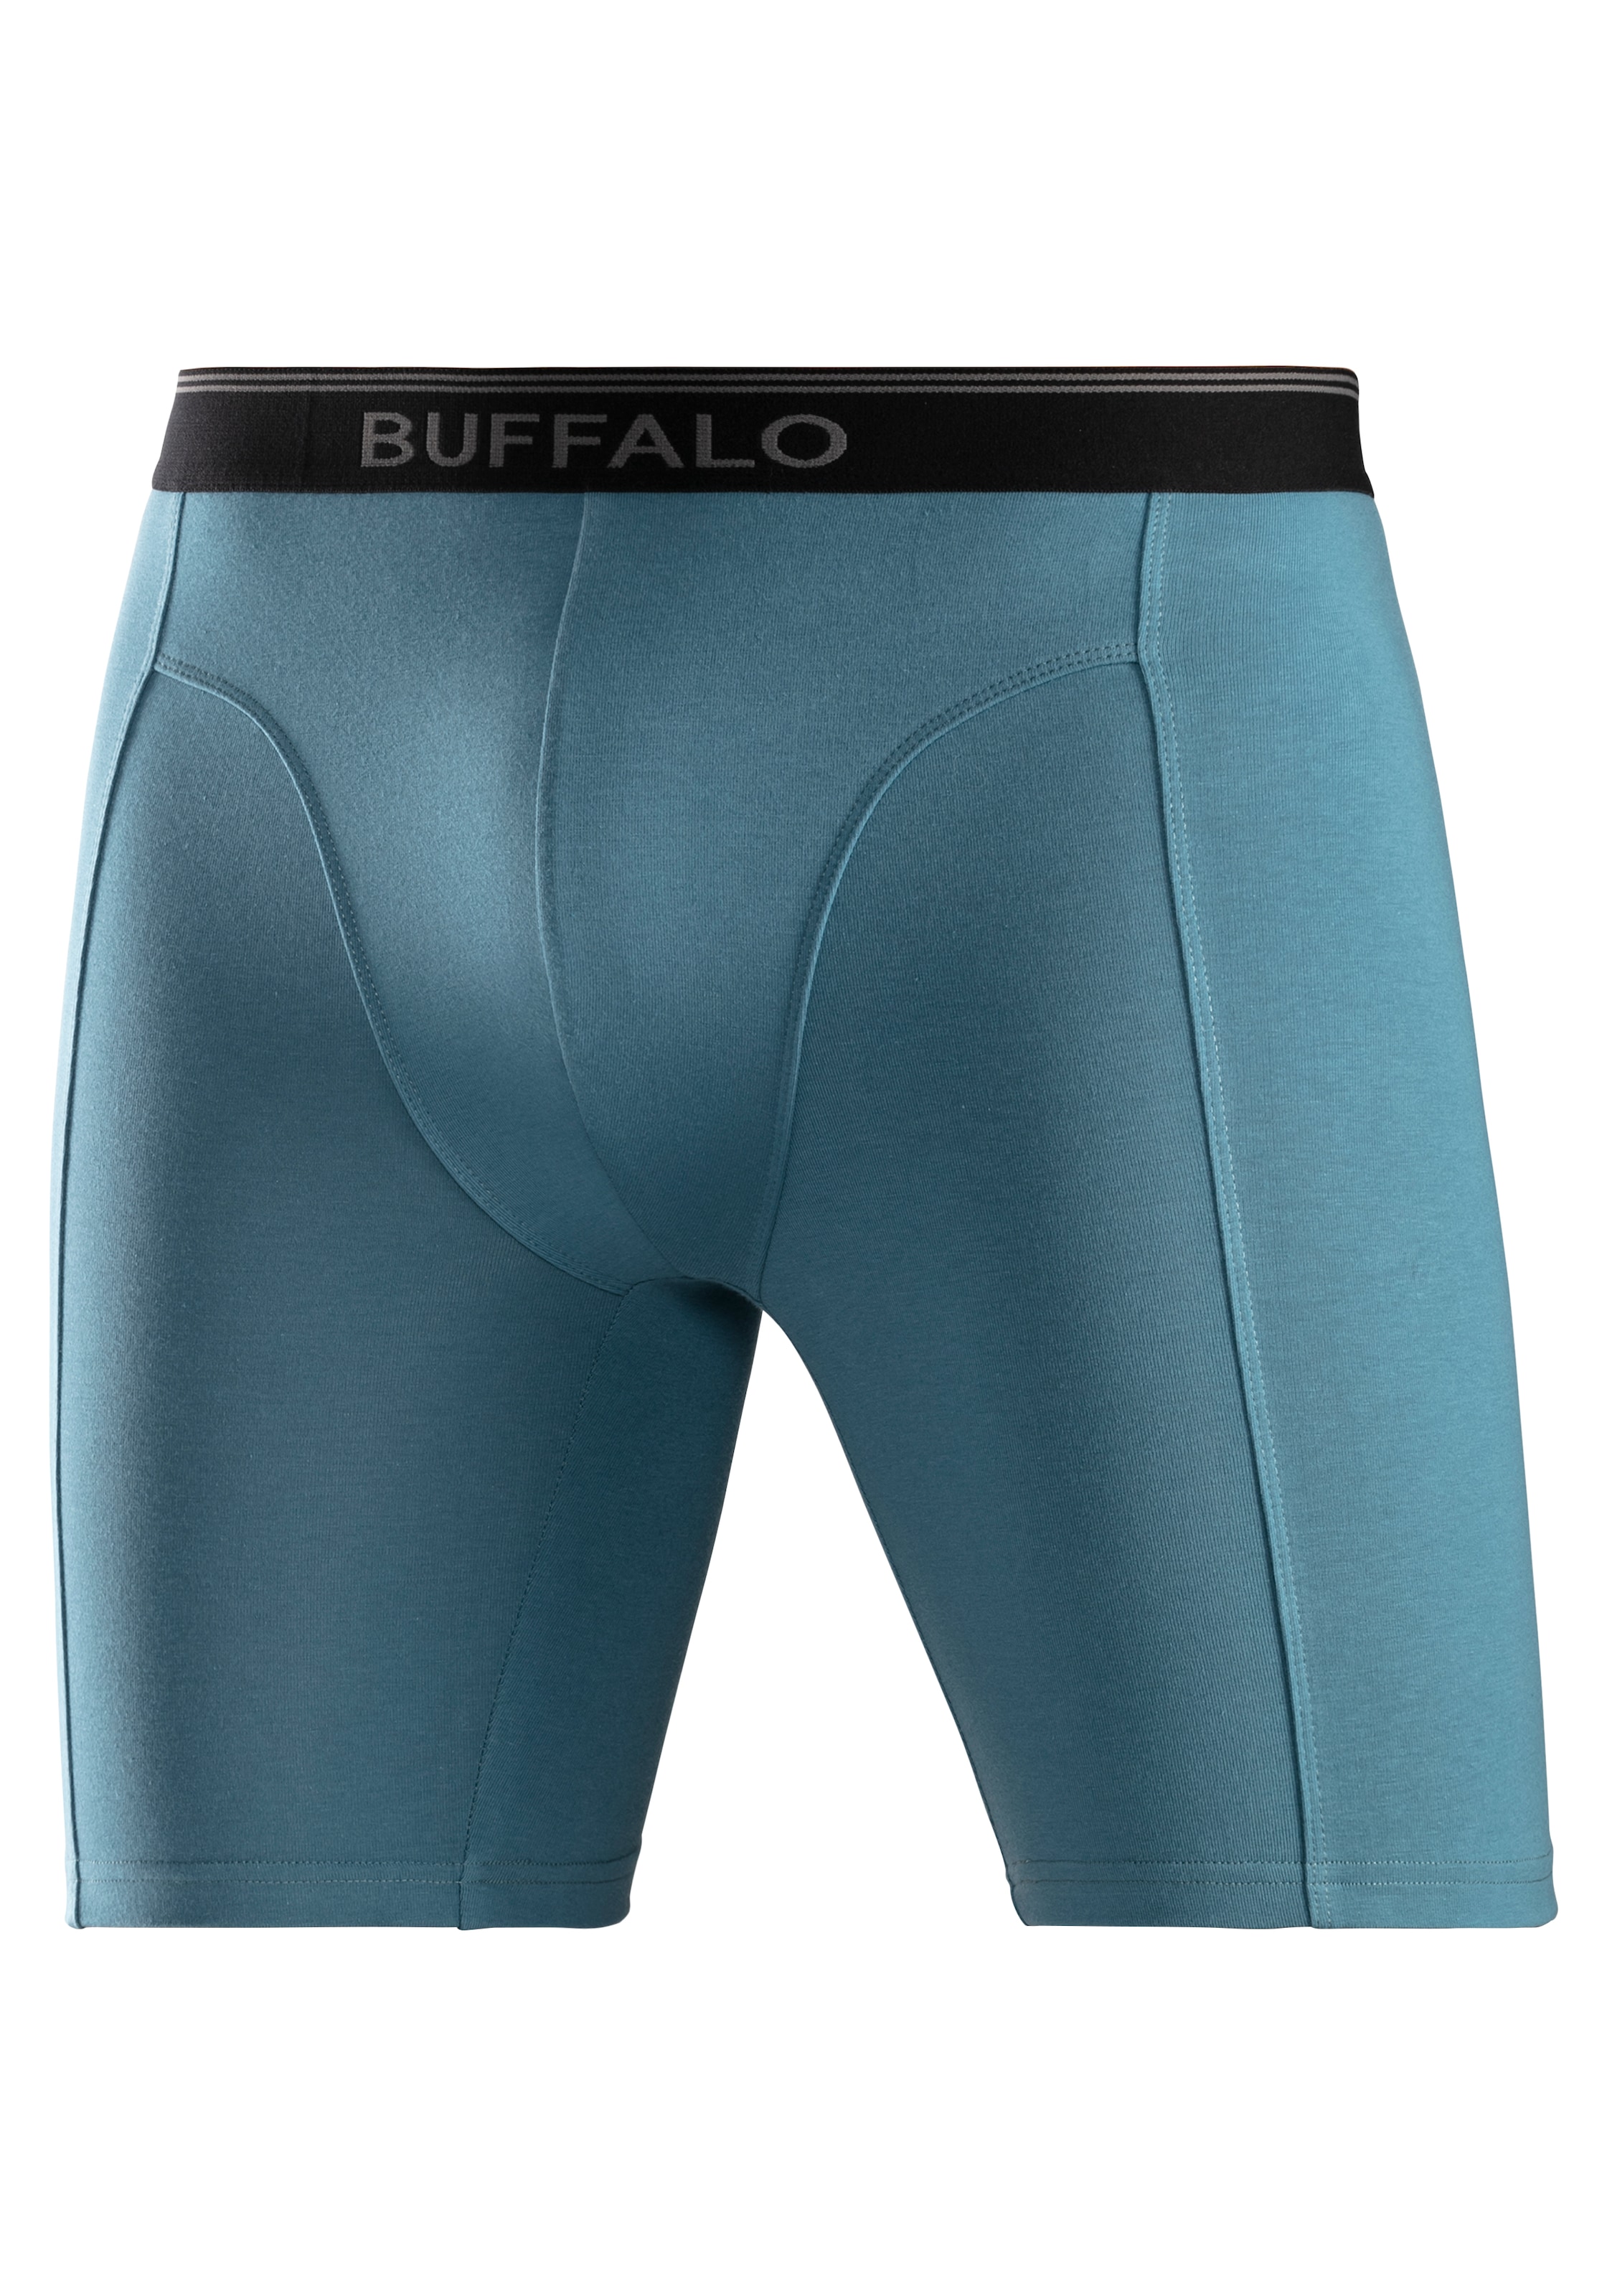 Buffalo Boxer, (Packung, 3 St.), in langer Form ideal auch für Sport und Trekking